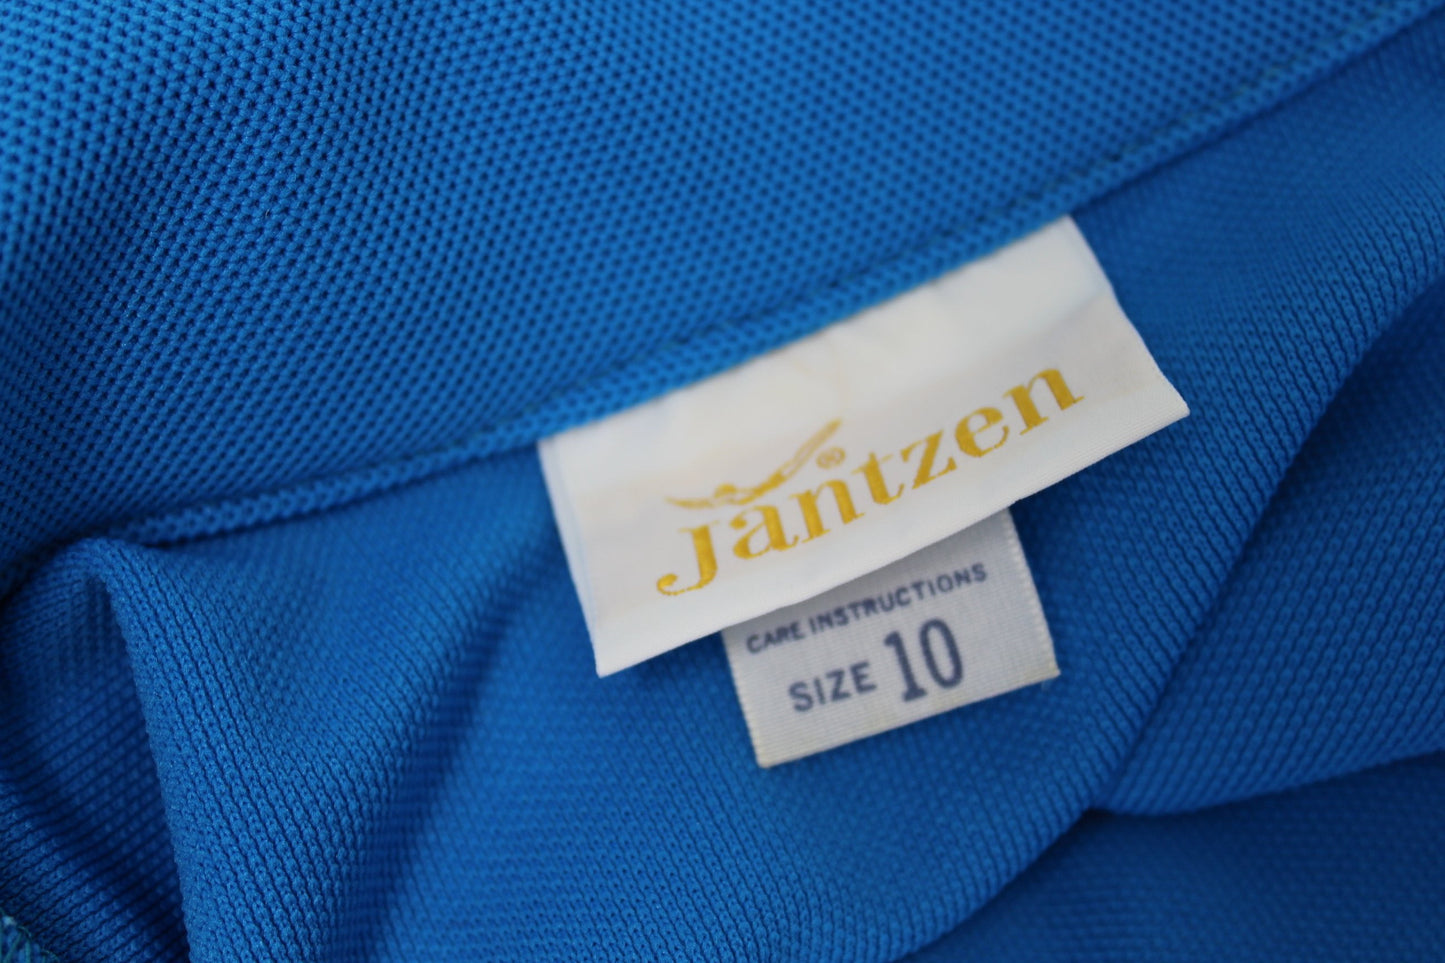 Vintage Jantzen Nautical Pants Suit 1960s - Button Tab Flare Pants - Long Sleeve Jacket original diver jantzen tags